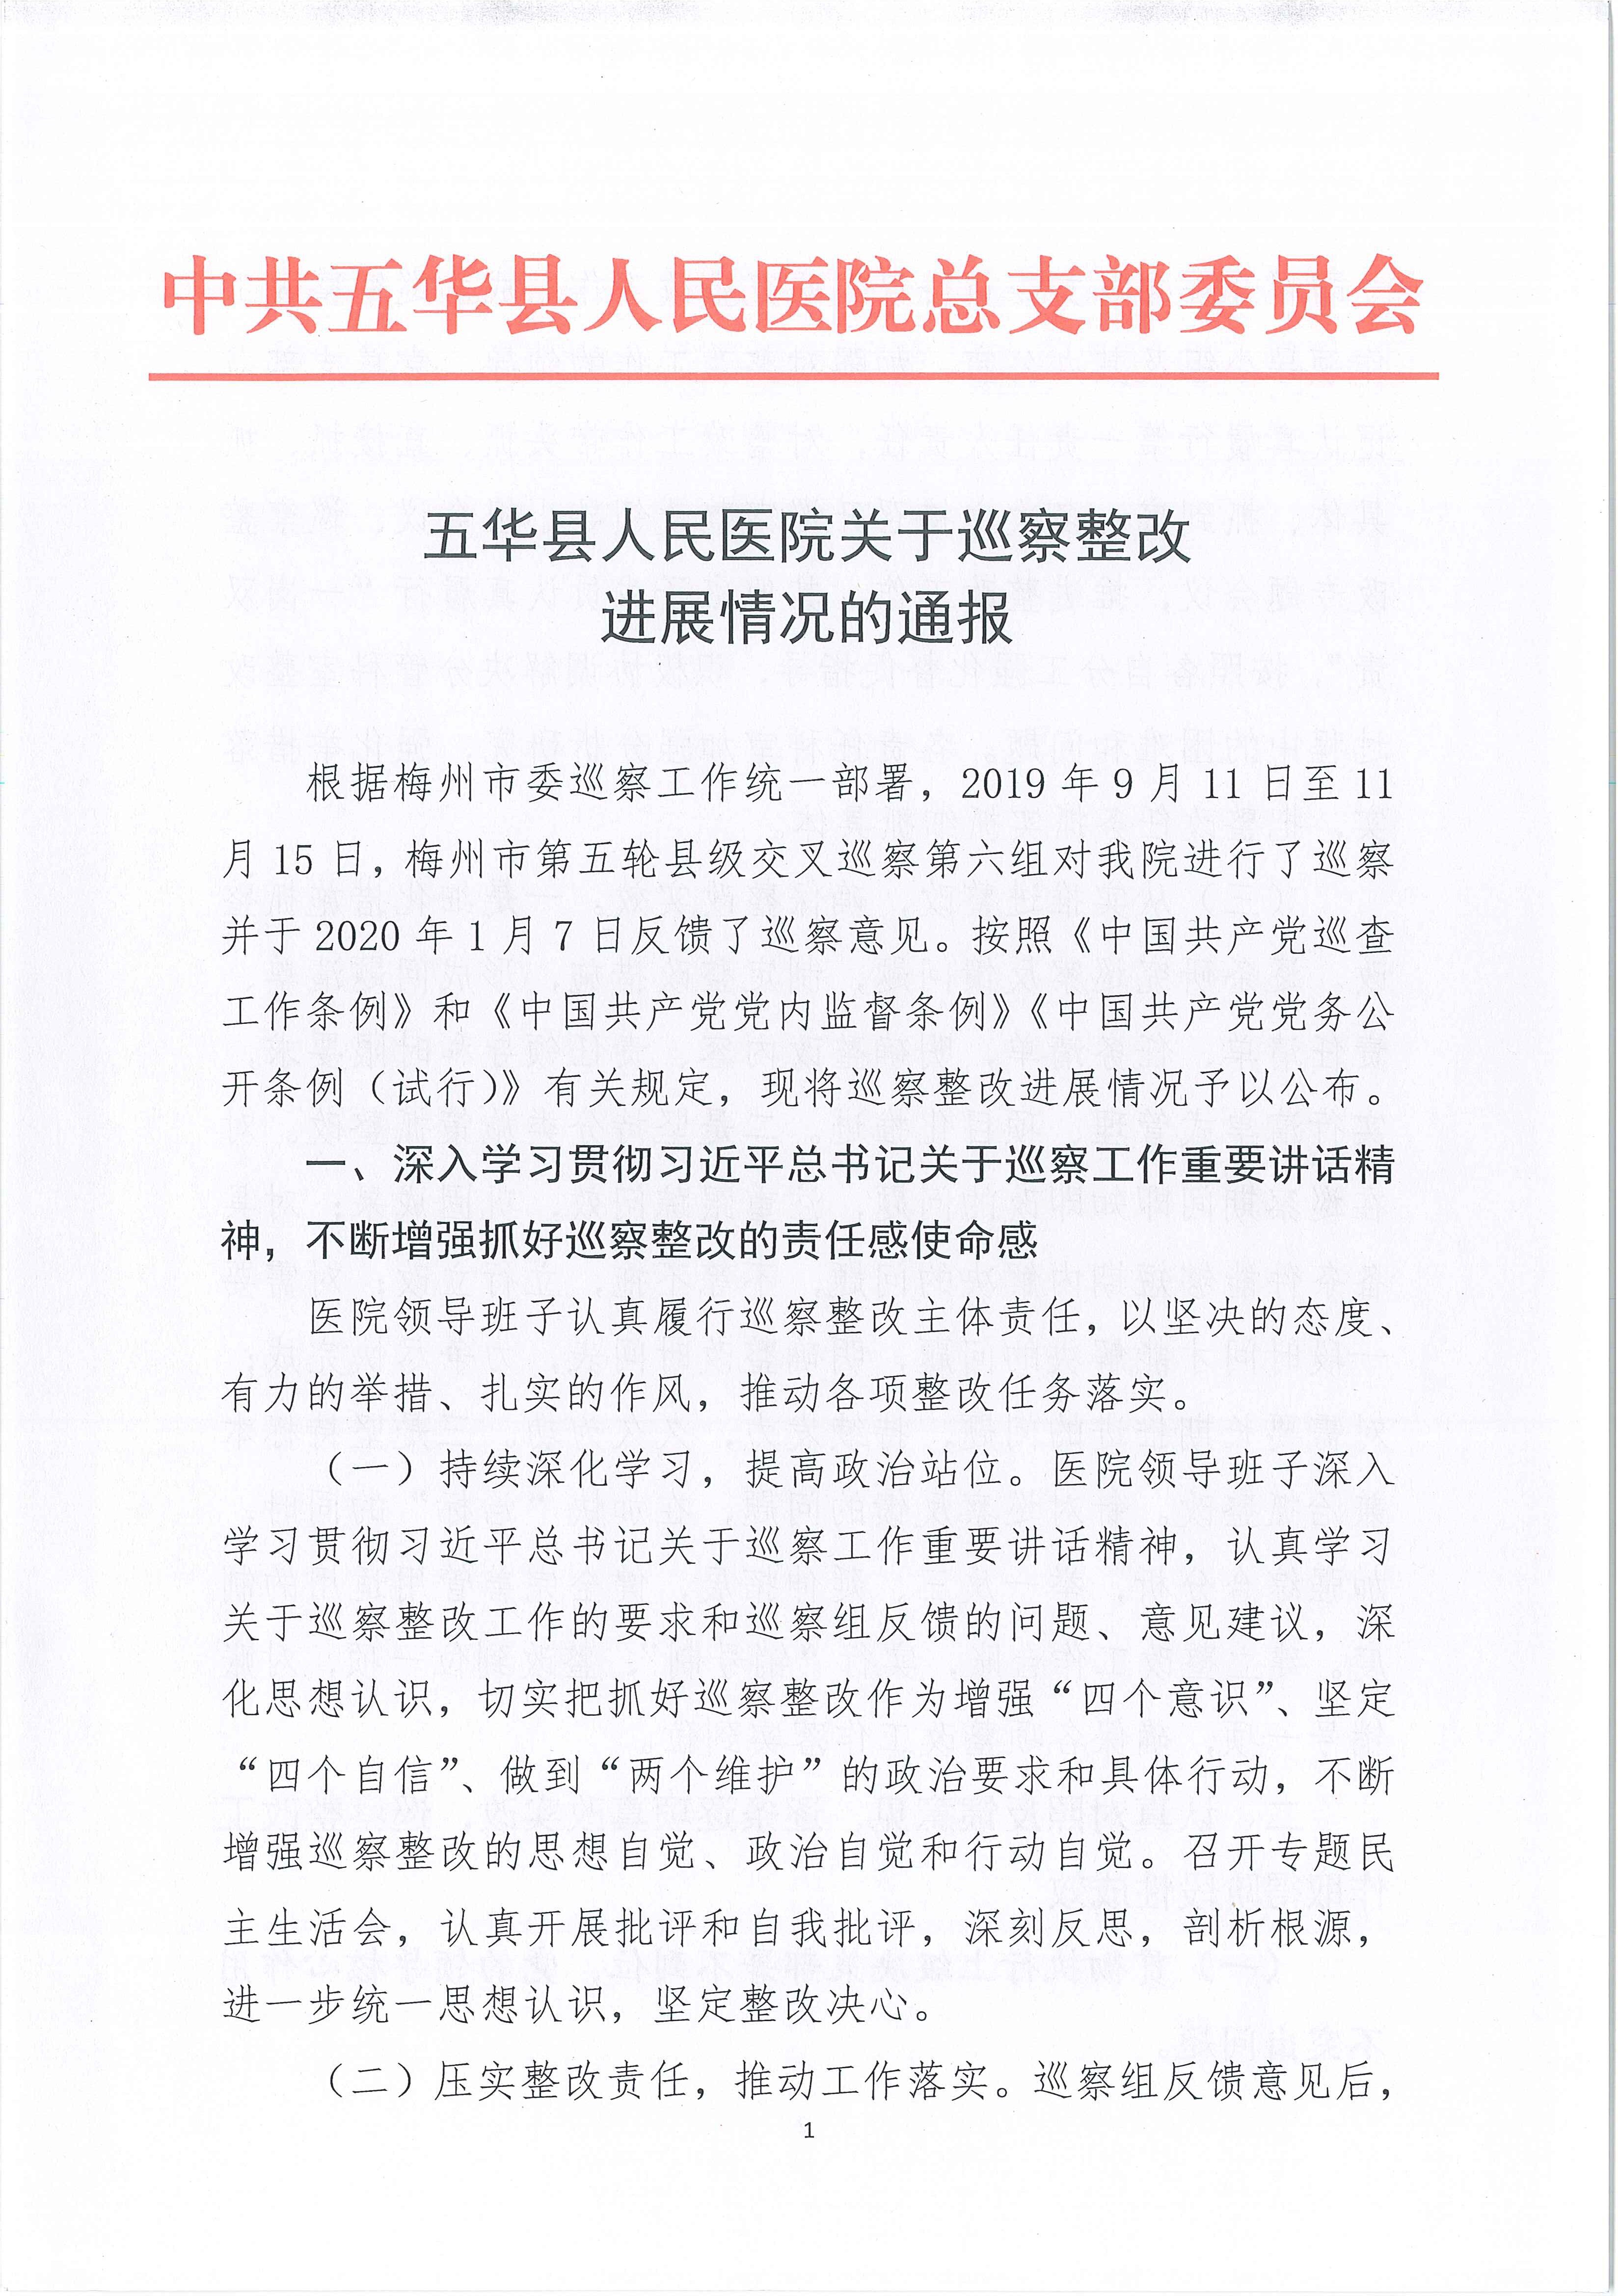 五华县人民医院关于巡察整改进展情况的通报_1